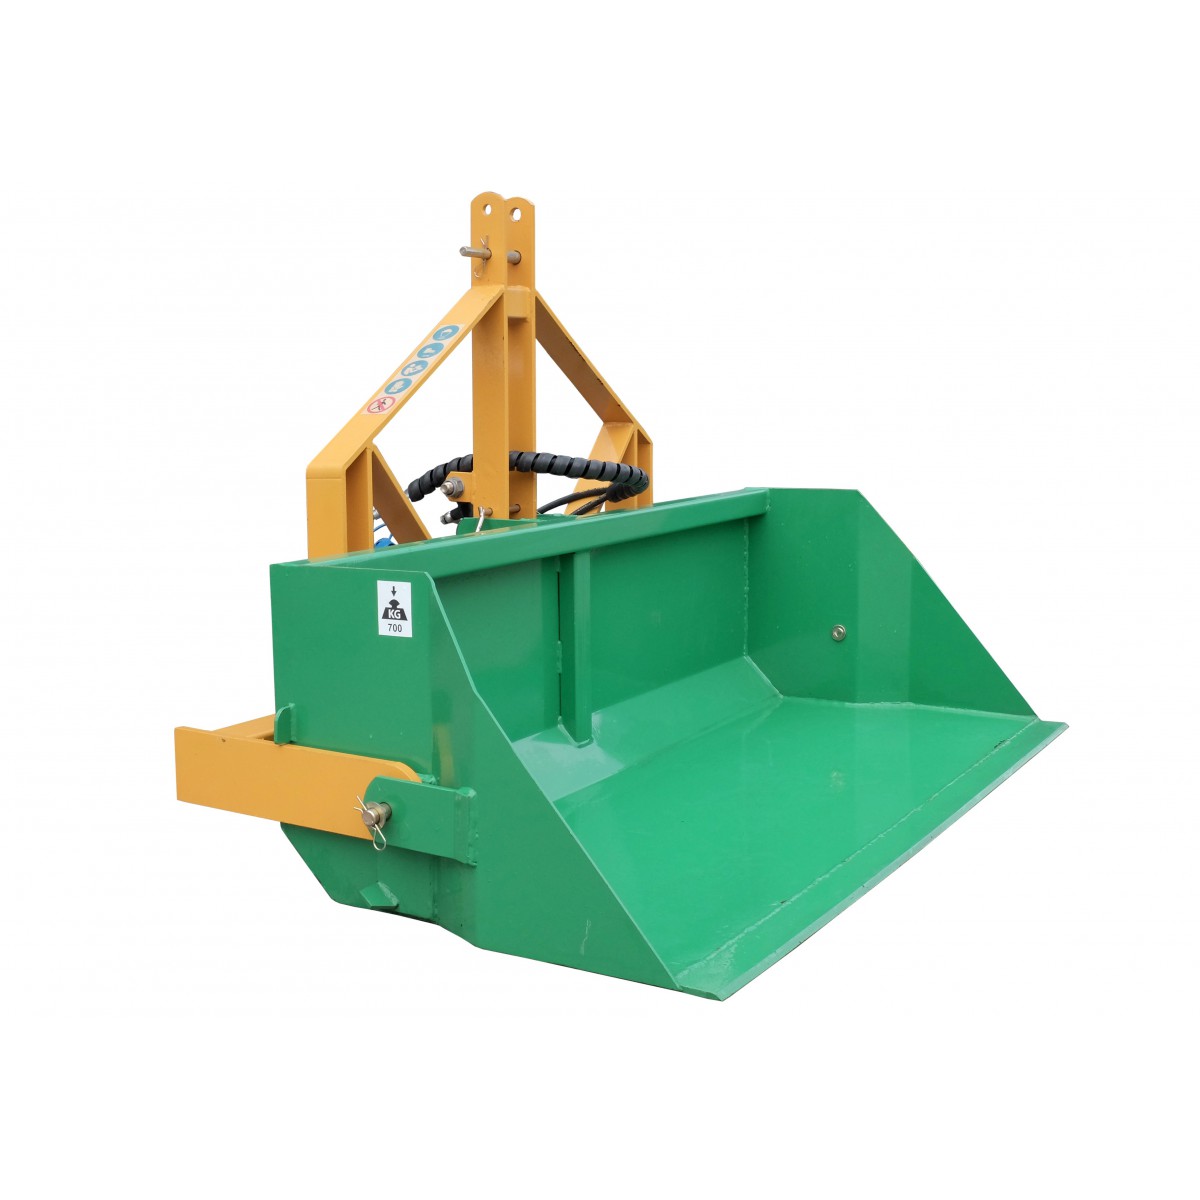 120 cm transport box with TRX hydraulic tipper